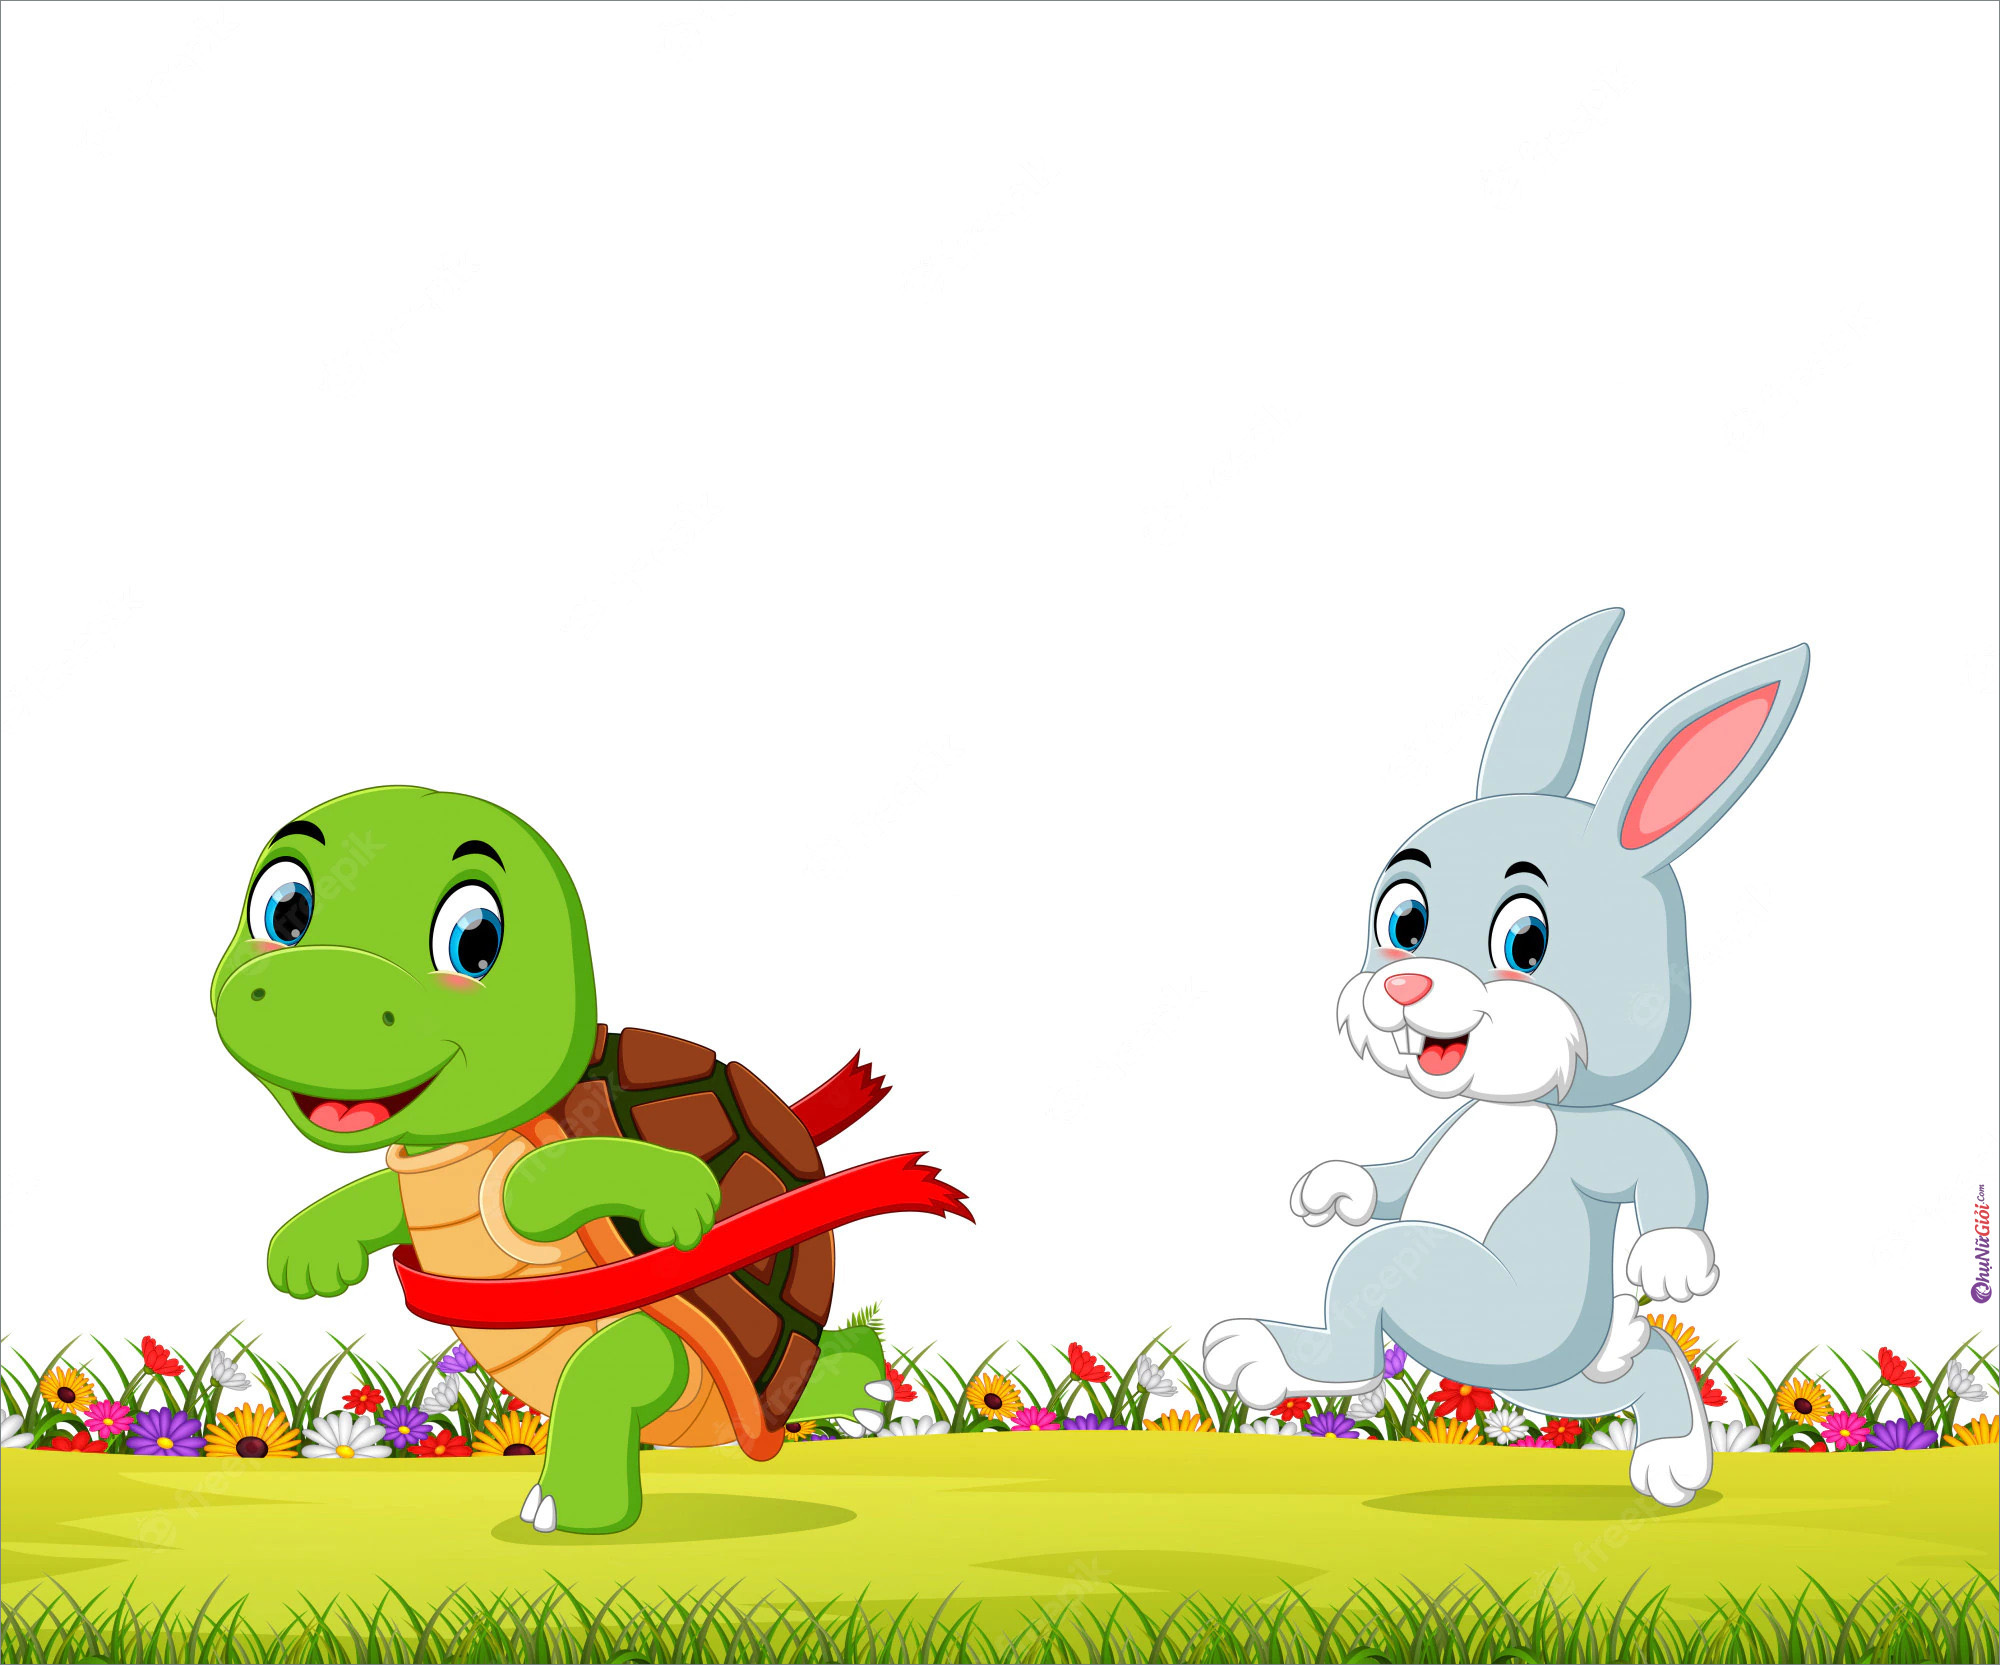 Hình ảnh vui nhộn của chú thỏ và chú rùa đang chào đón bạn đến với thế giới của trẻ em. Tận hưởng khoảnh khắc thú vị và vui nhộn khi xem chúng cùng chơi đùa và trò đùa.